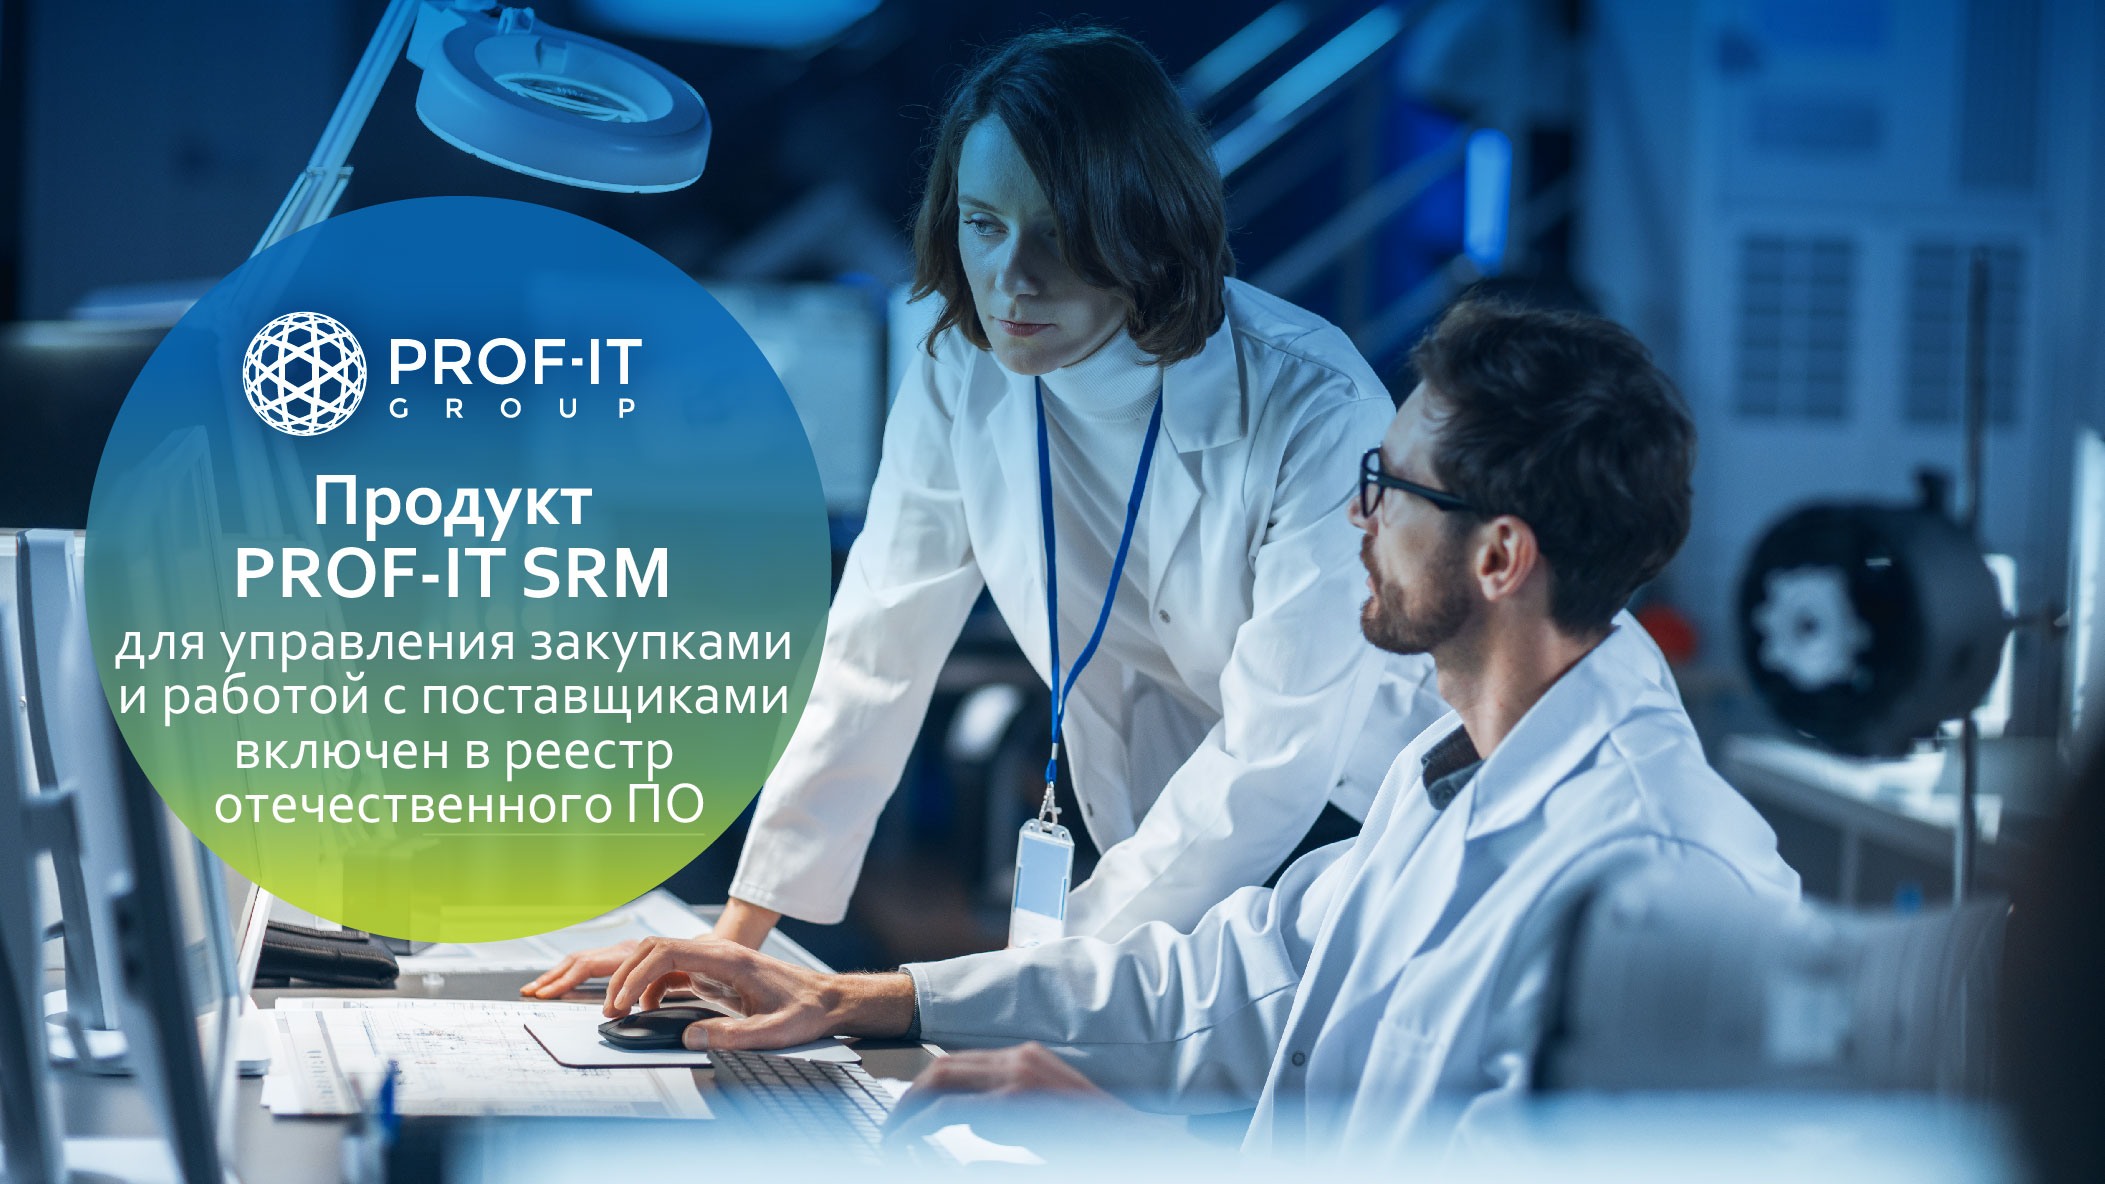 Решение PROF-IT SRM включено в Единый реестр российского ПО.